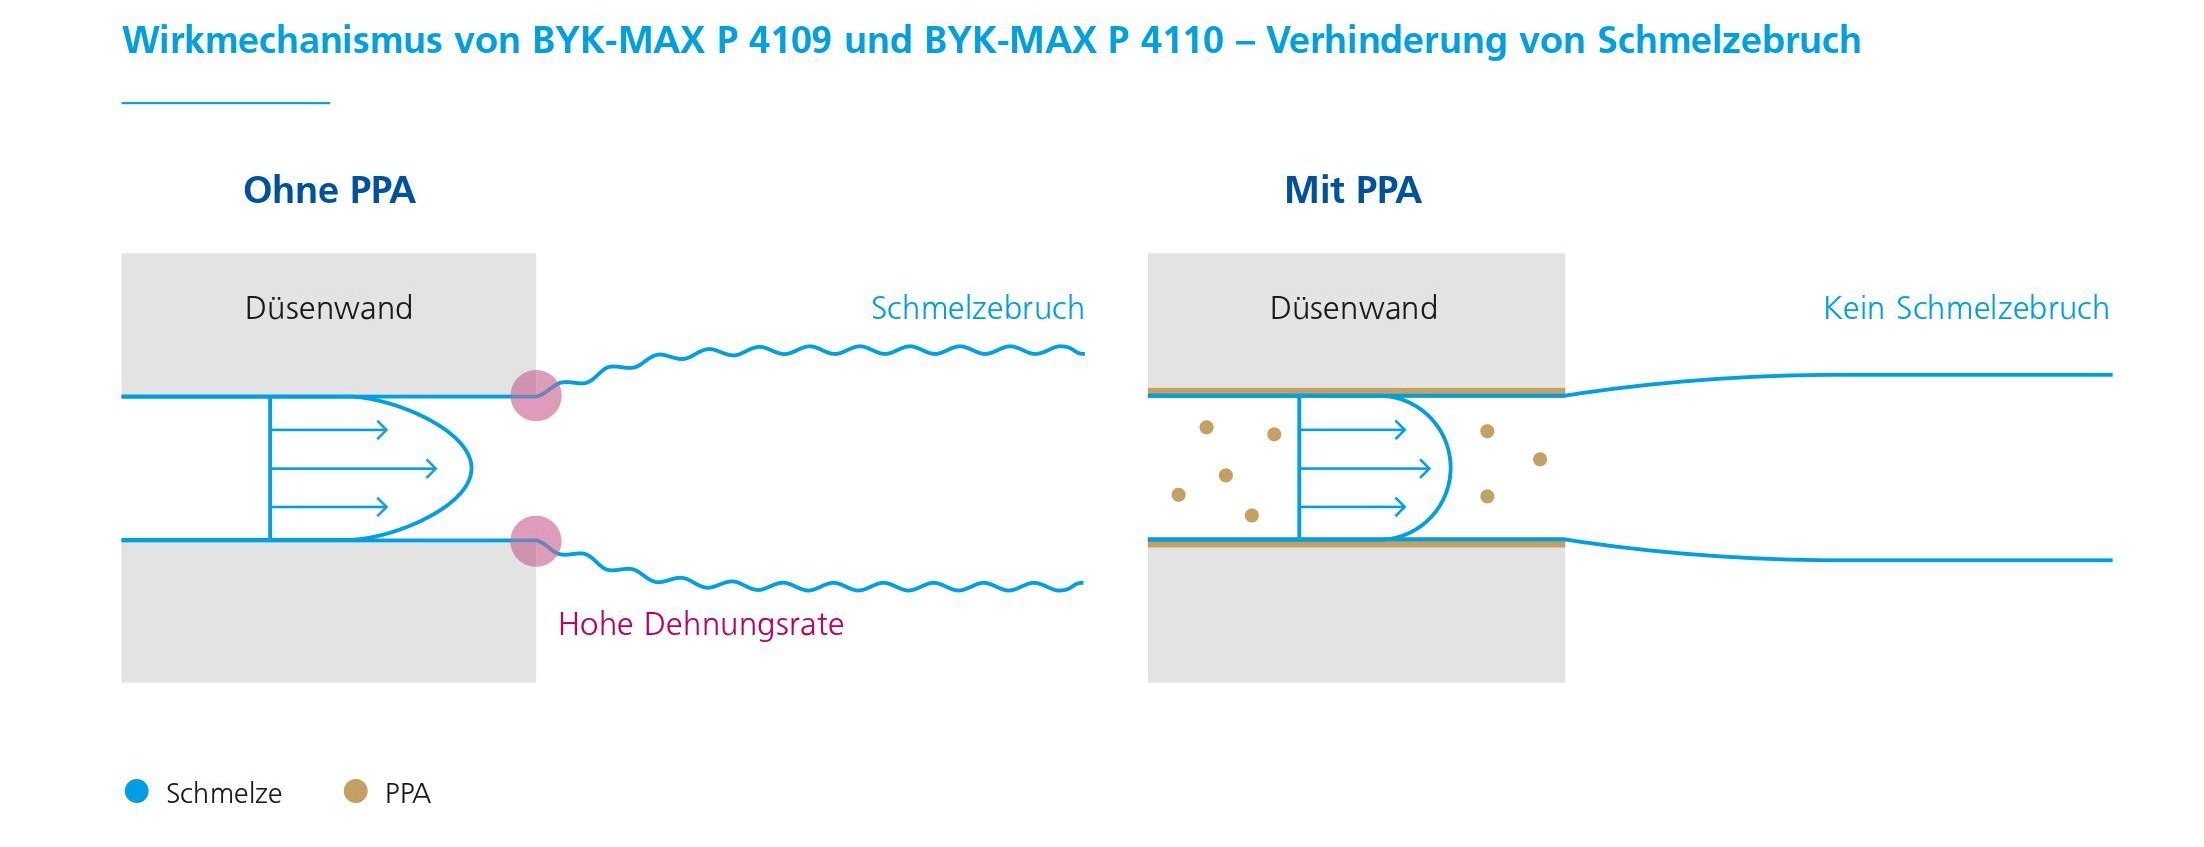 Wirkmechanismus von BYK-MAX P 4109 und BYK-MAX P 4110